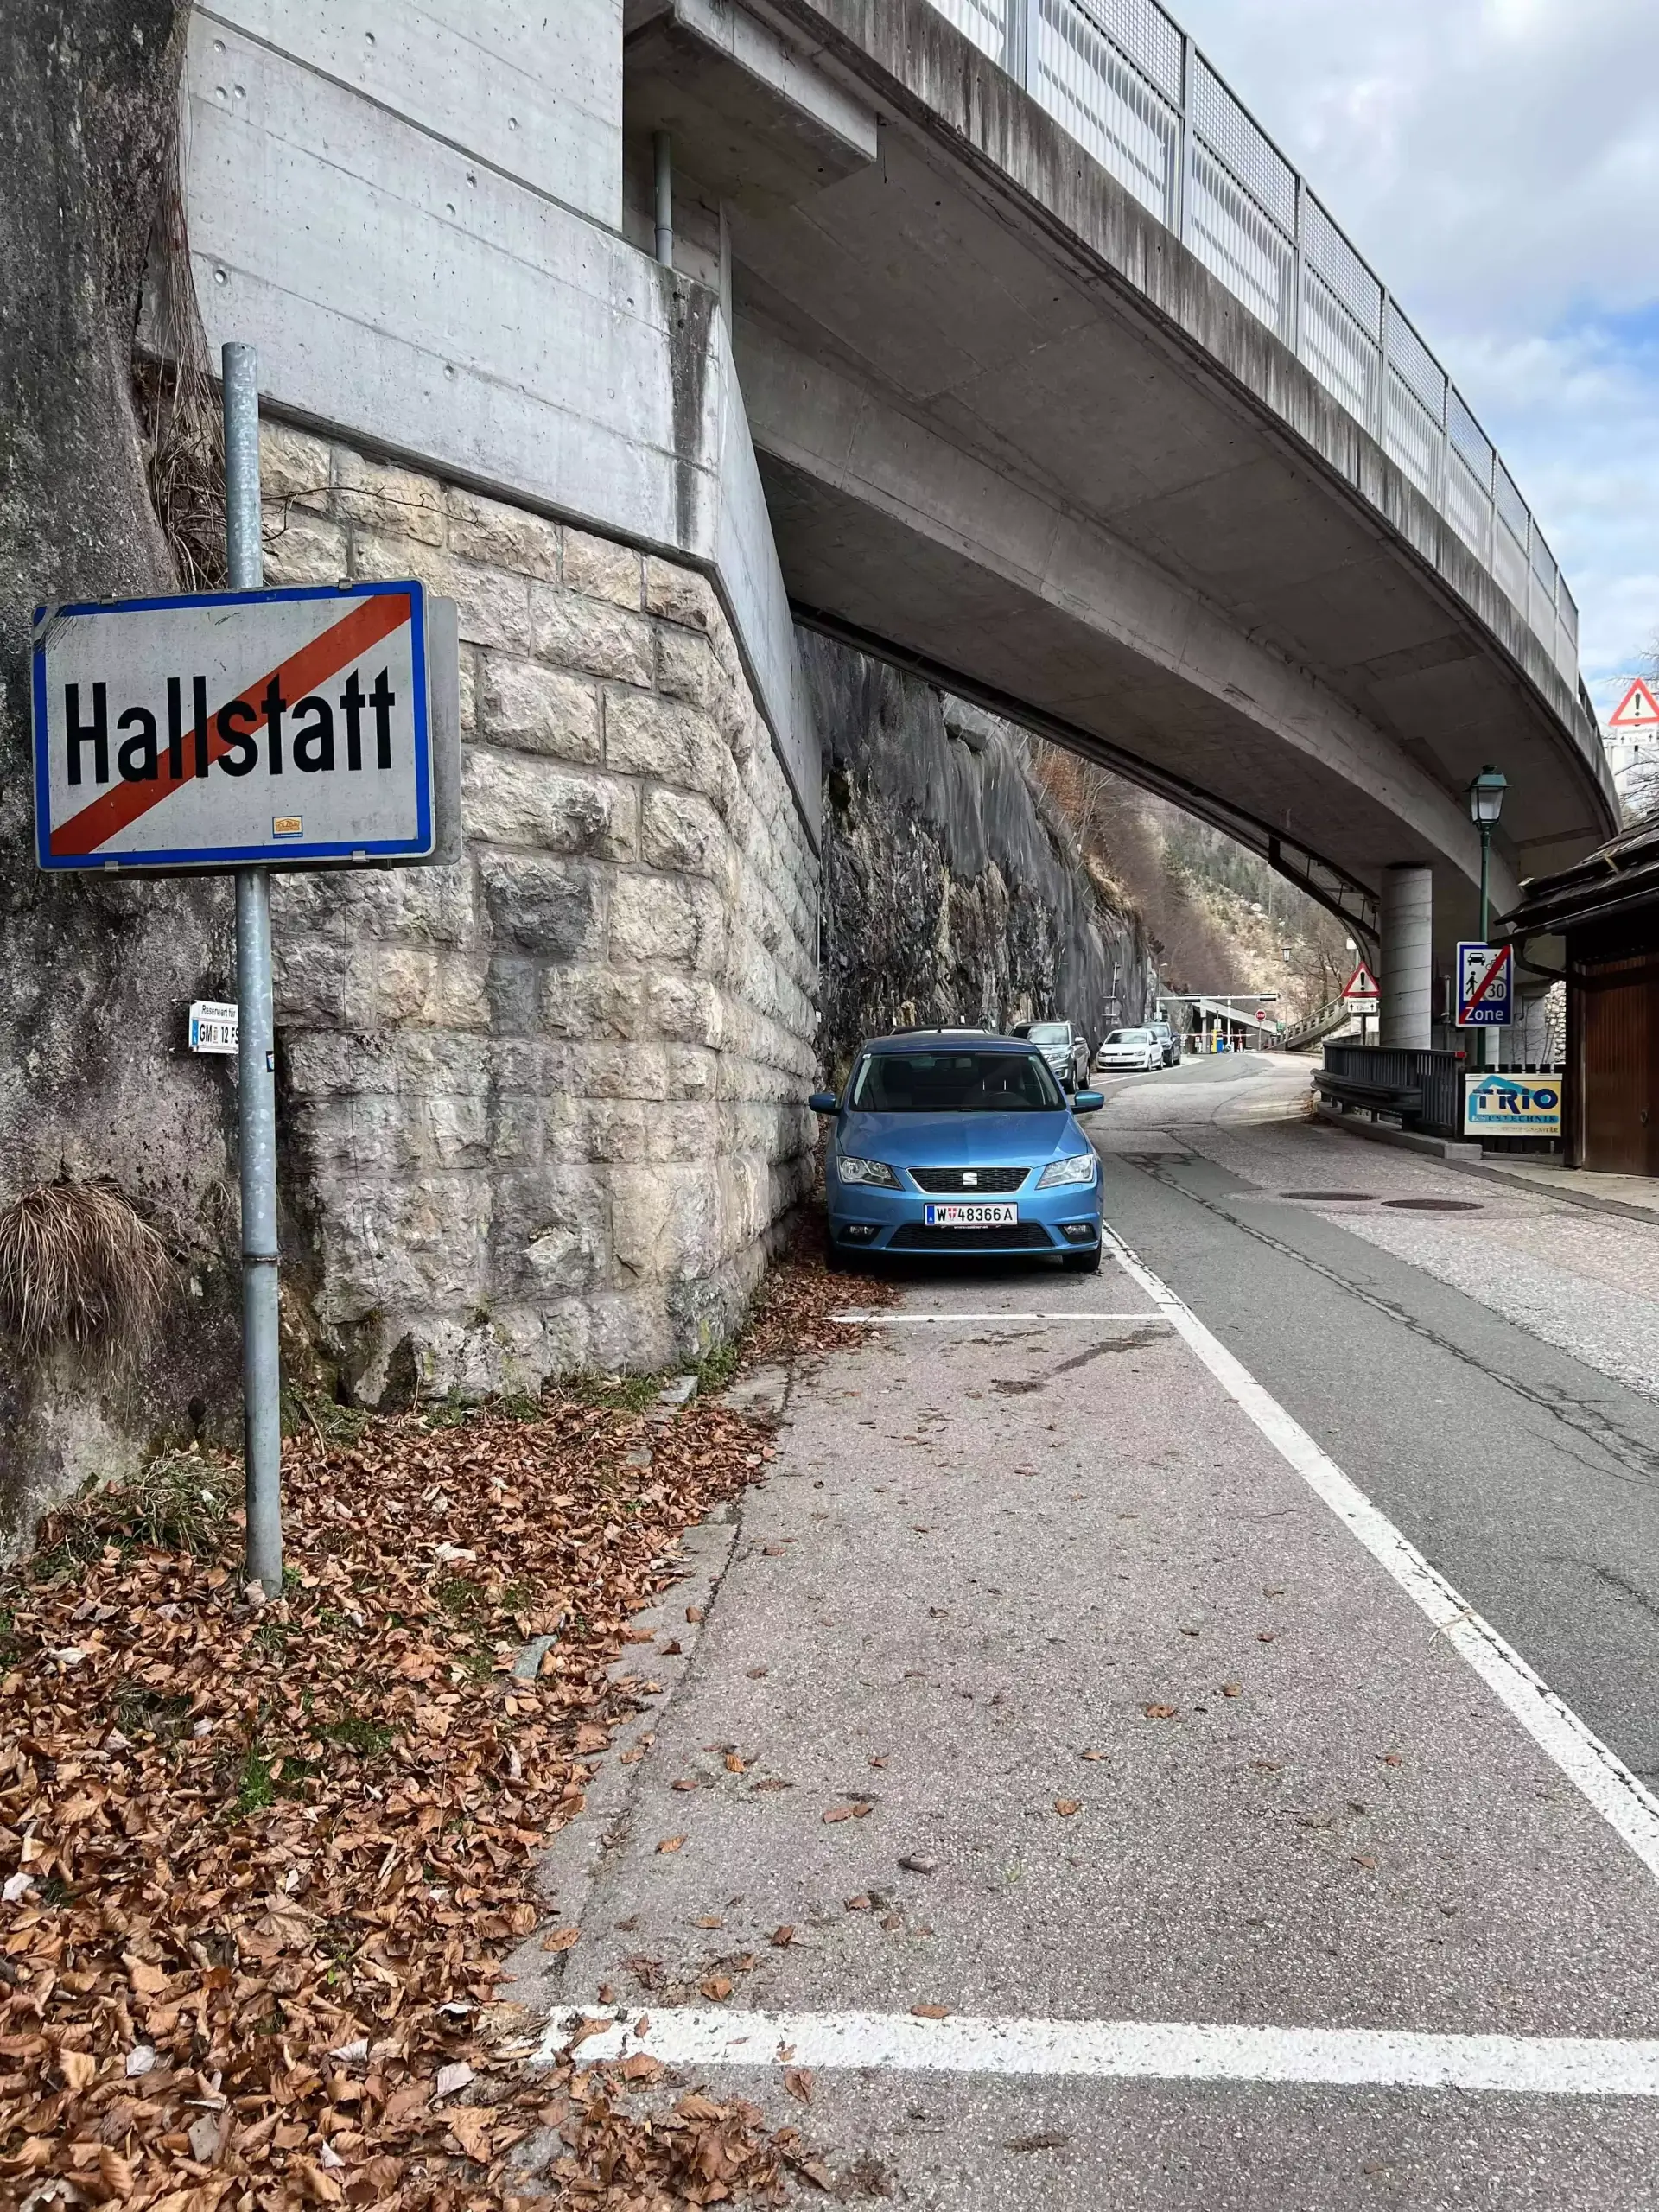 Leaving Hallstatt